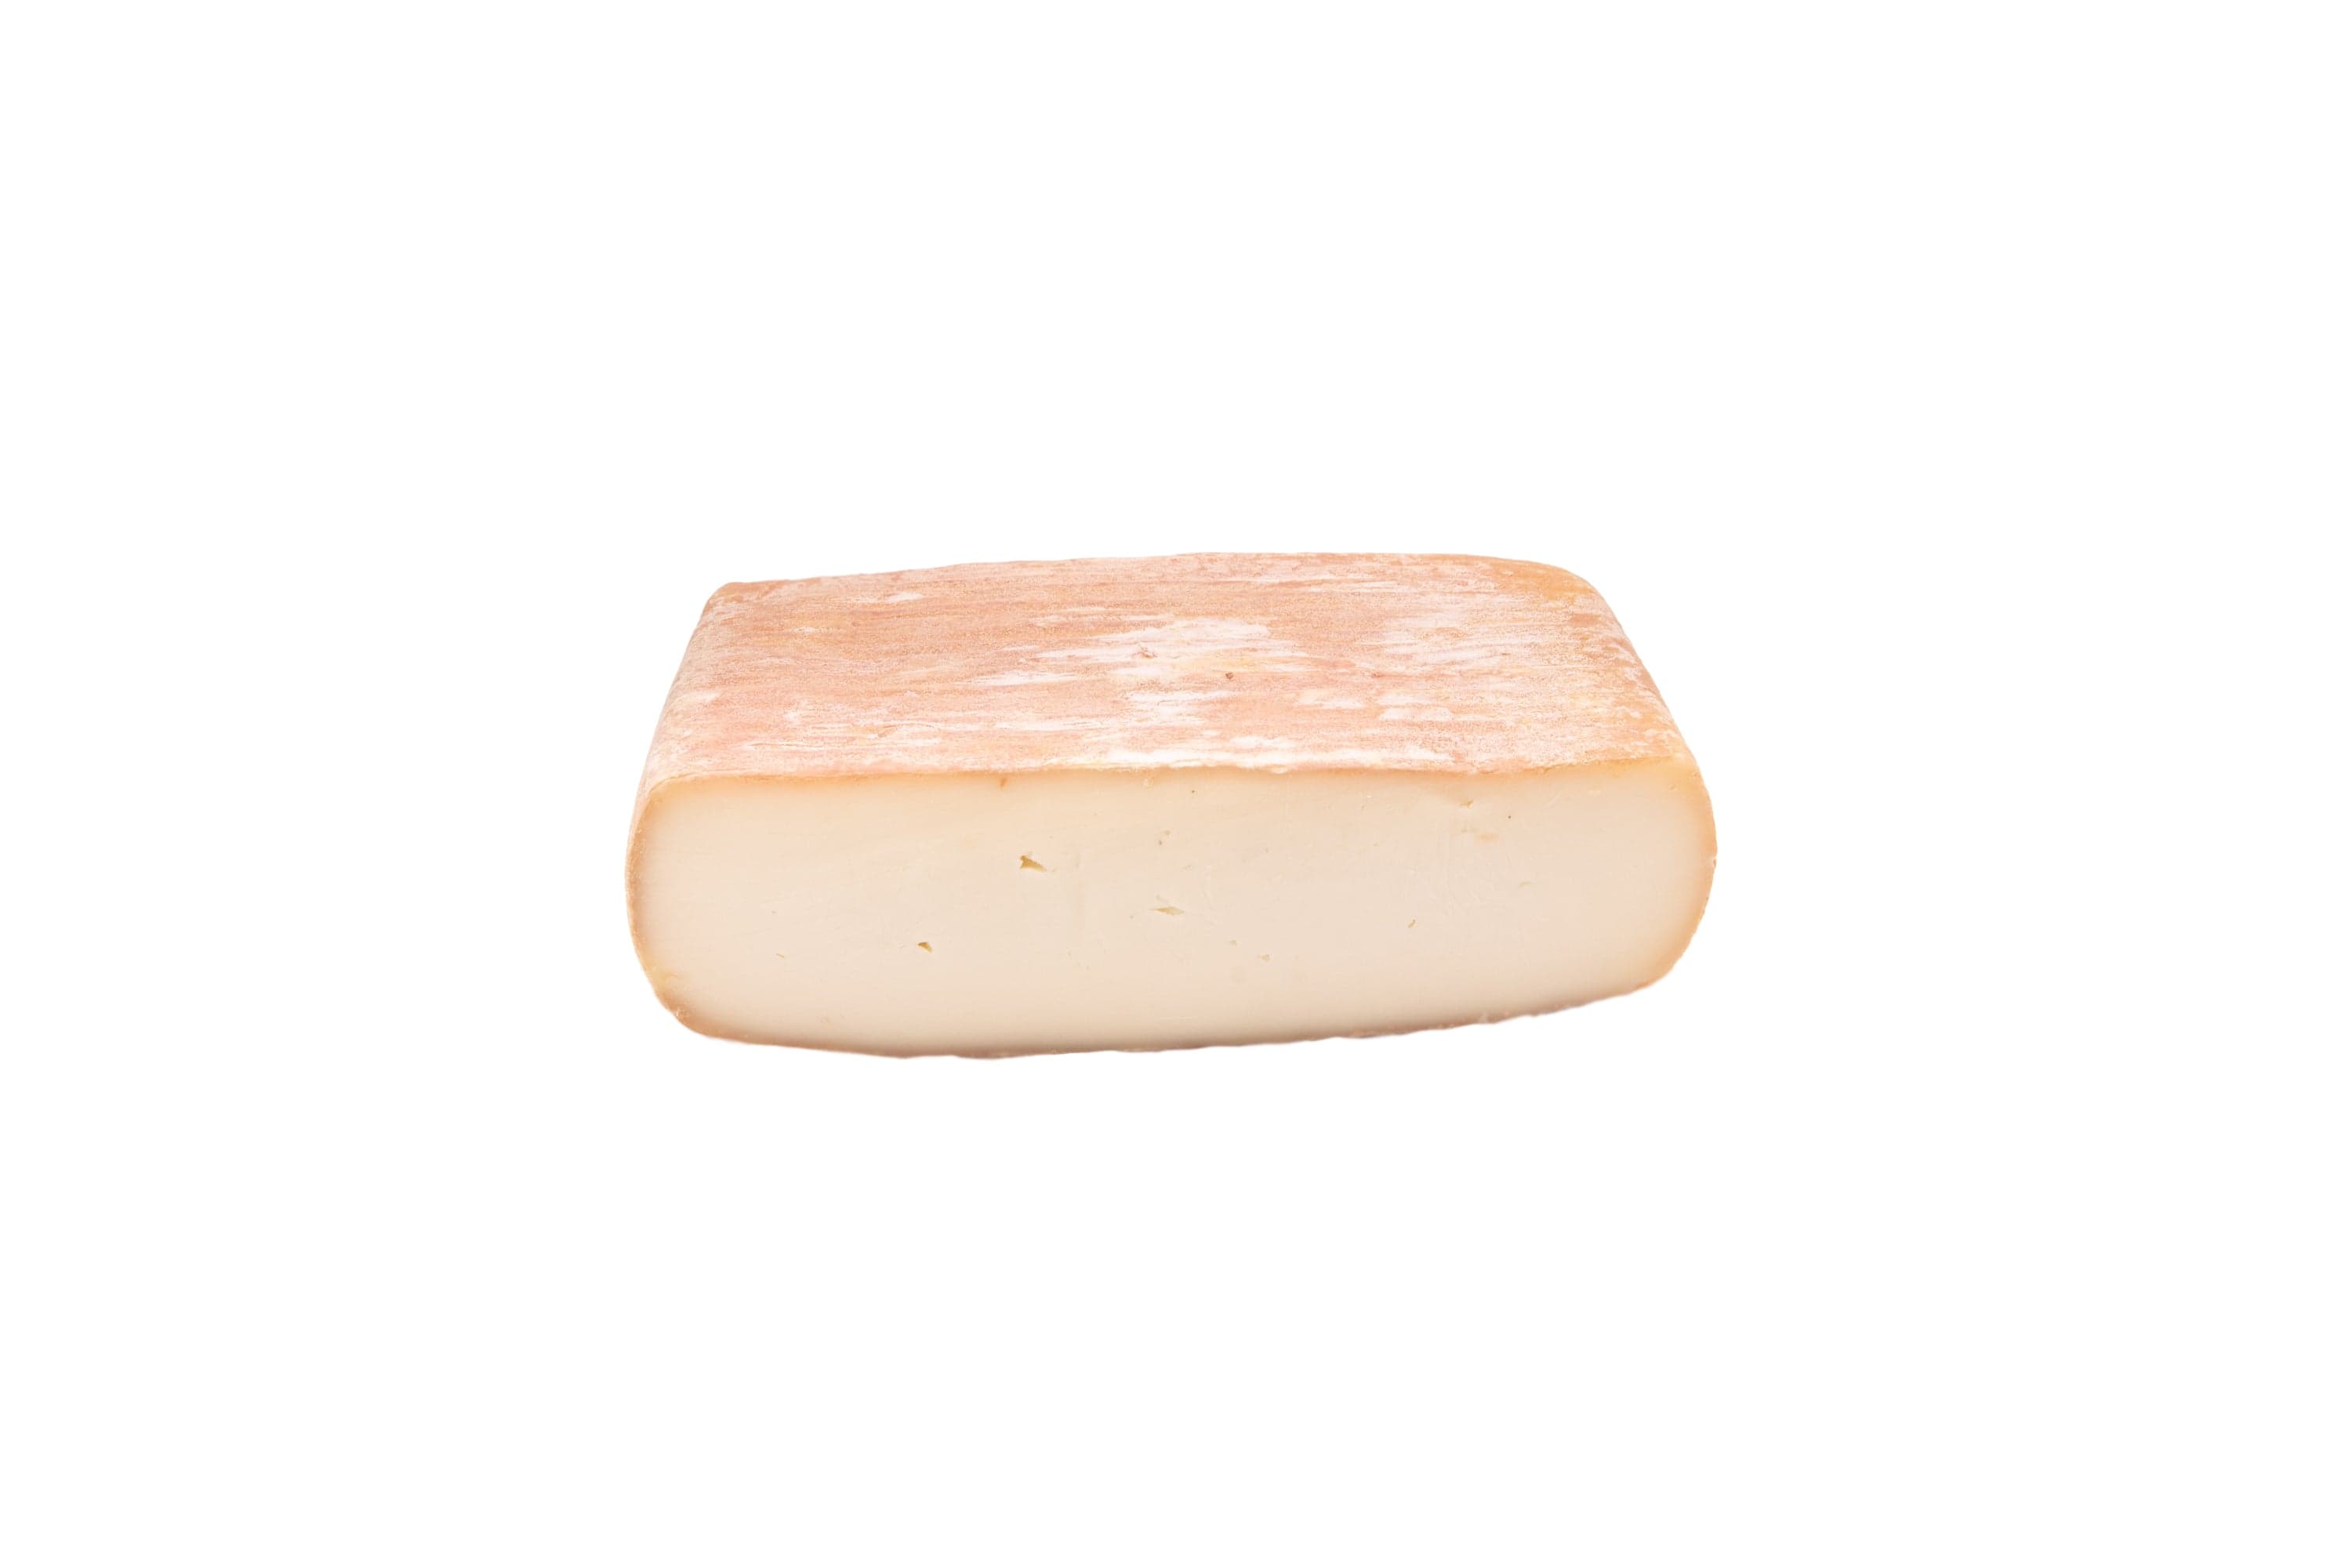 Cheese - Quadrella di Buffala 8 oz